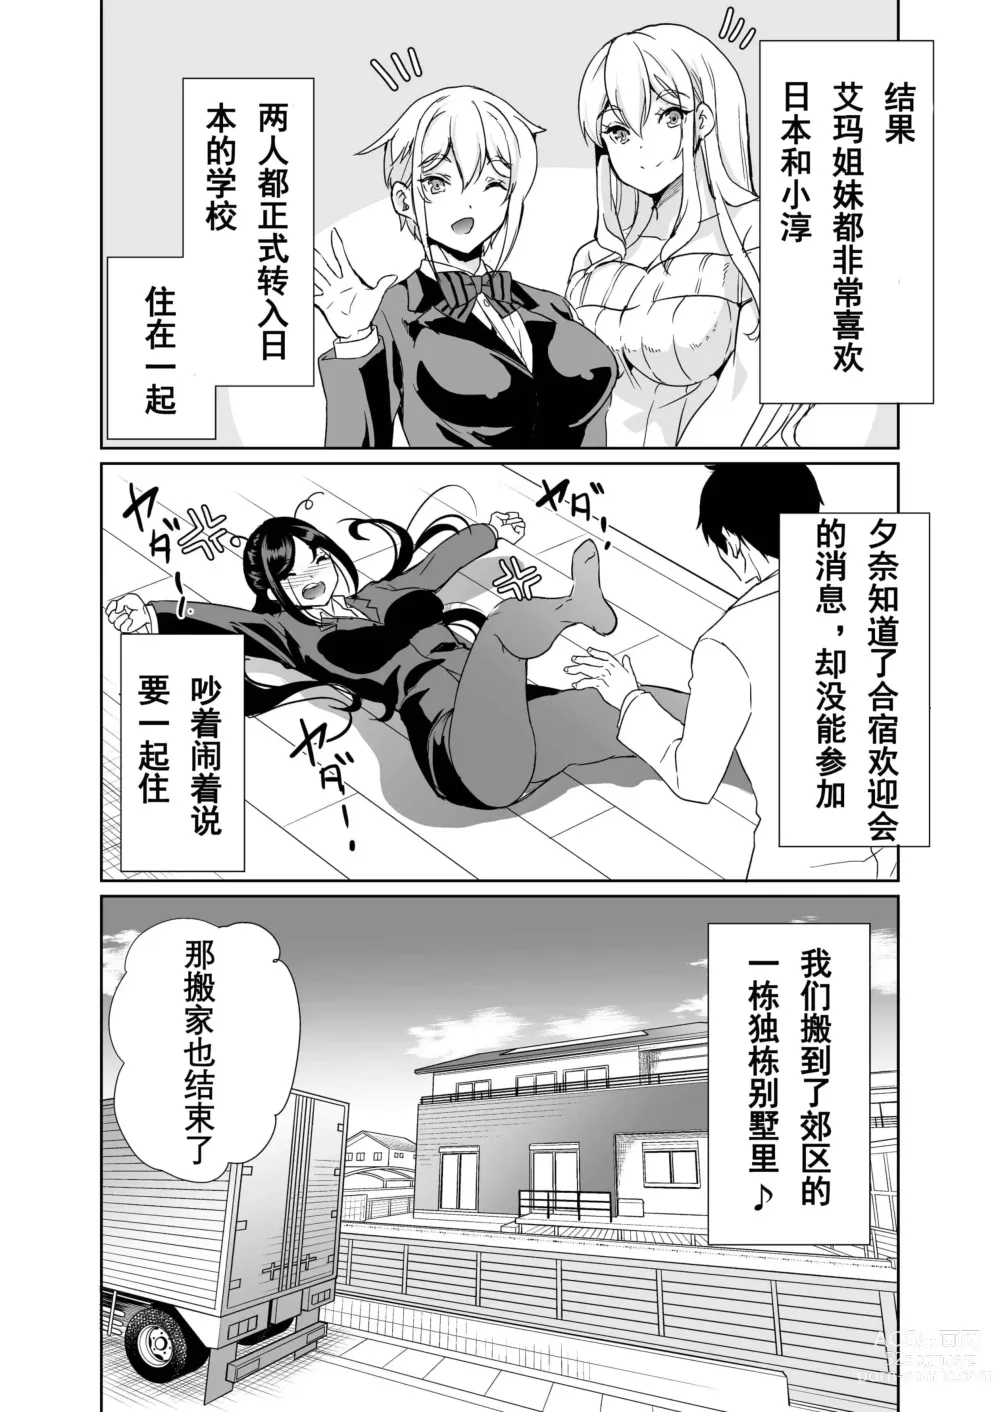 Page 372 of doujinshi ハーレムは彼女の匂い +  妻のNGが無くなっていく整合